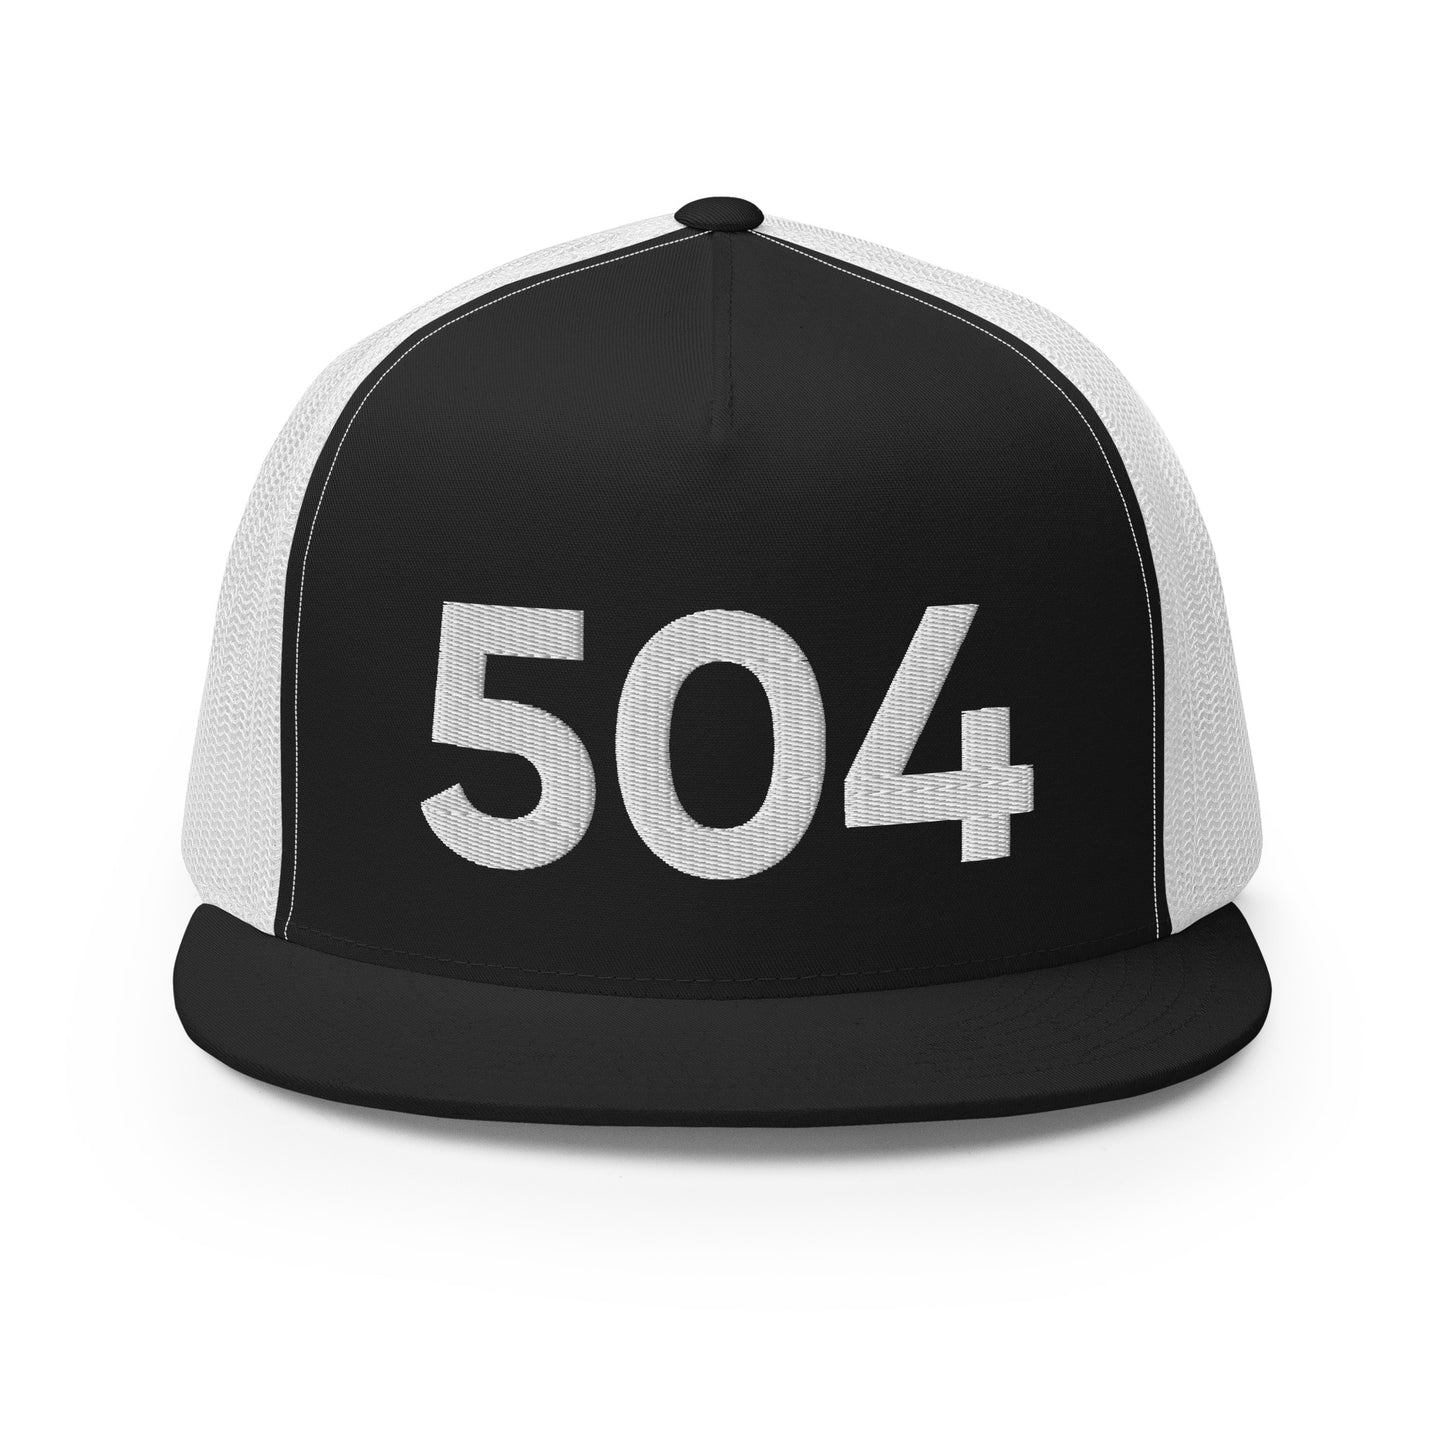 504 New Orleans Trucker Hat